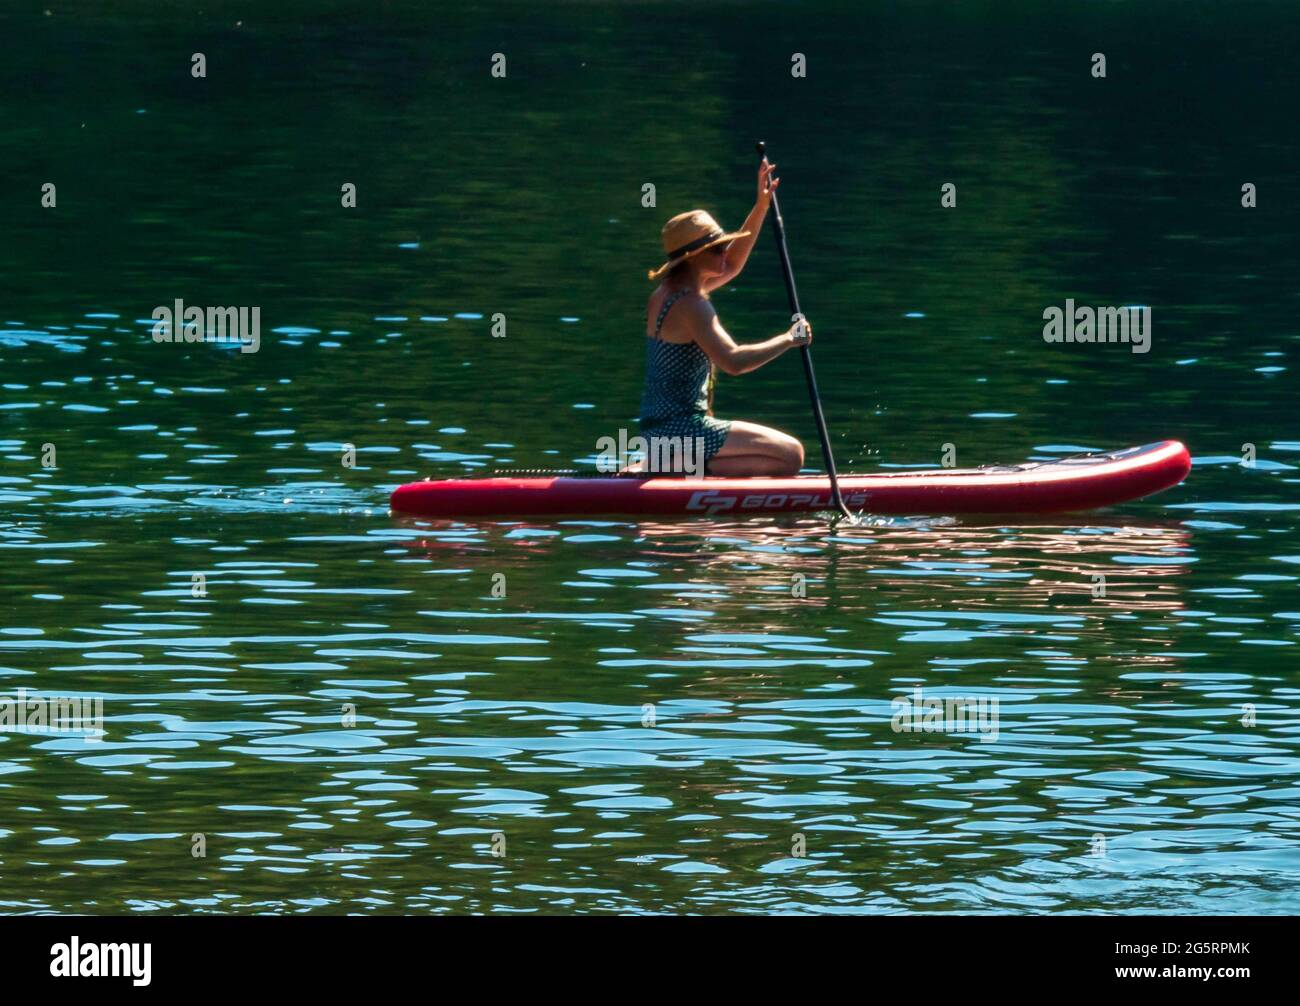 Junge Frau mit Hut, die auf einem Paddelbrett kniet. Grünes Wasser, friedliche Sommerszene. Stockfoto